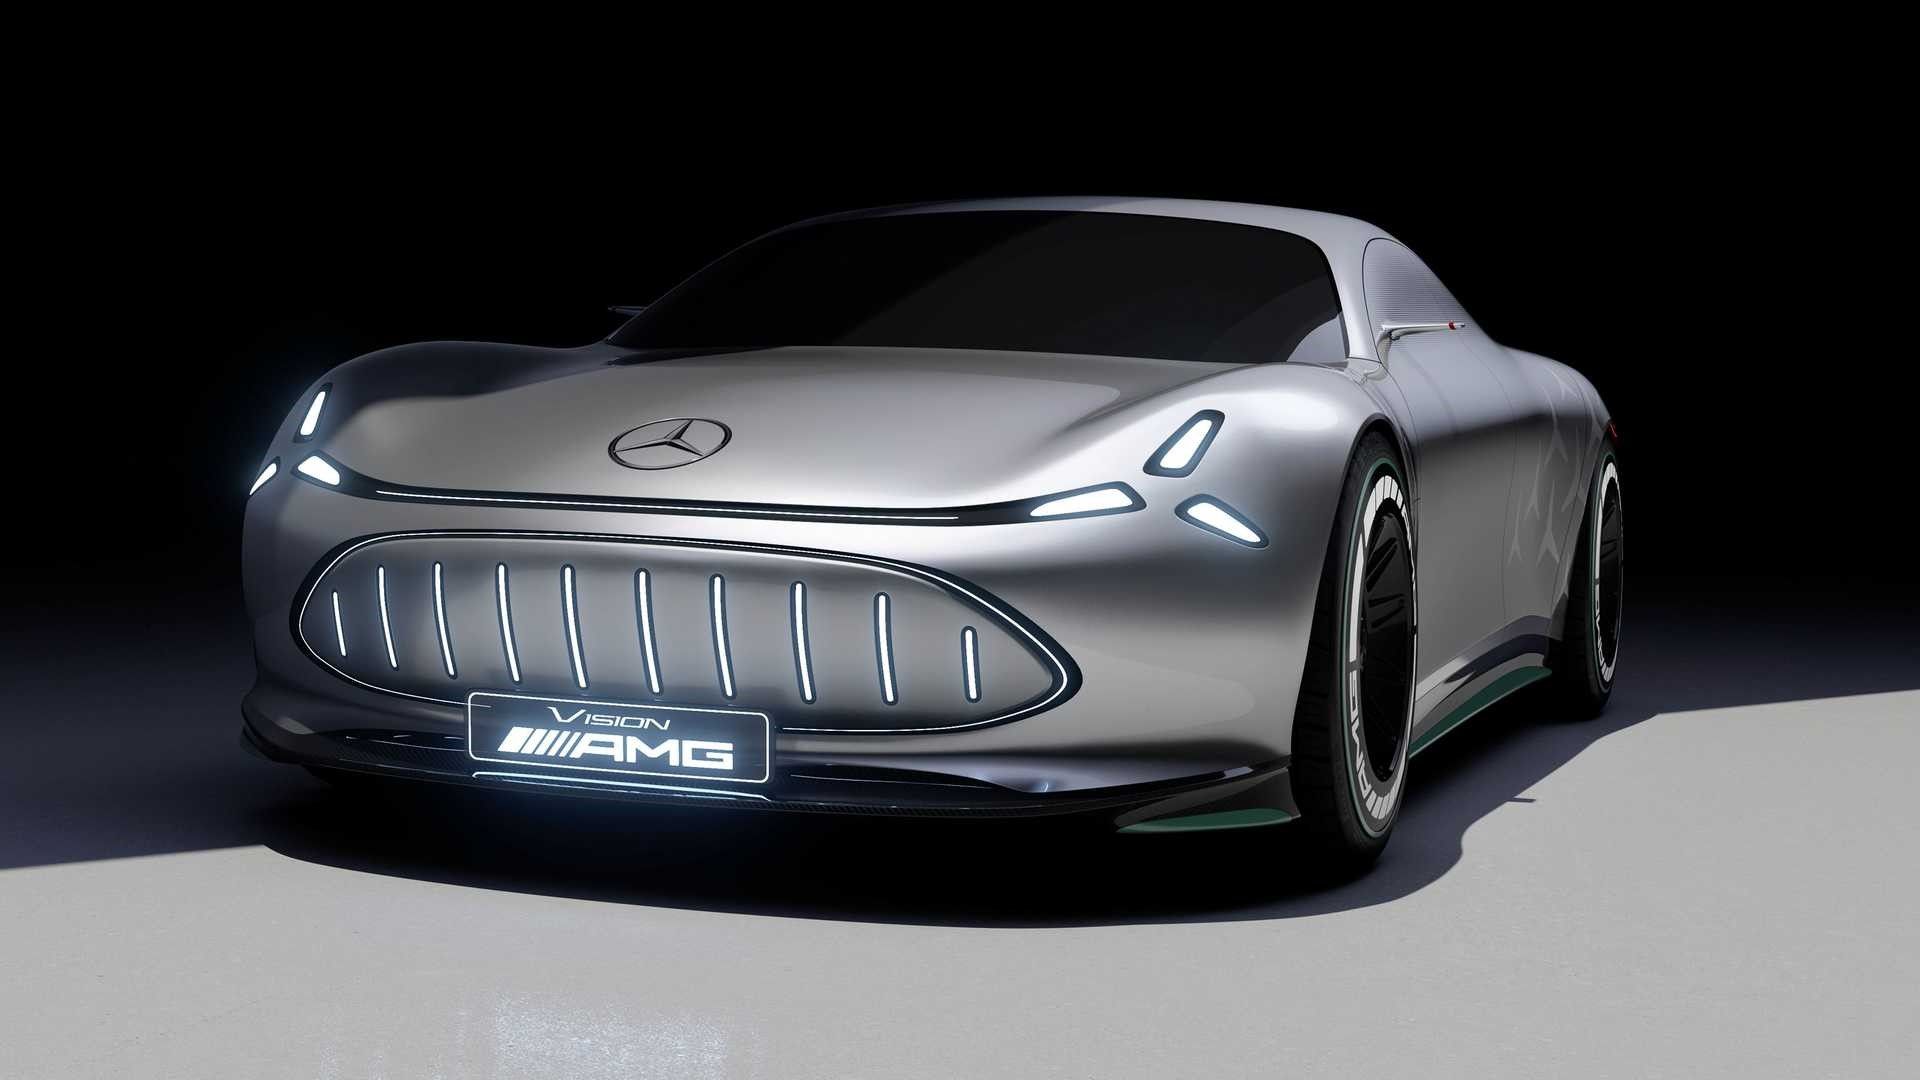 Mercedes Vision AMG: Το όραμα για την ηλεκτροκίνηση